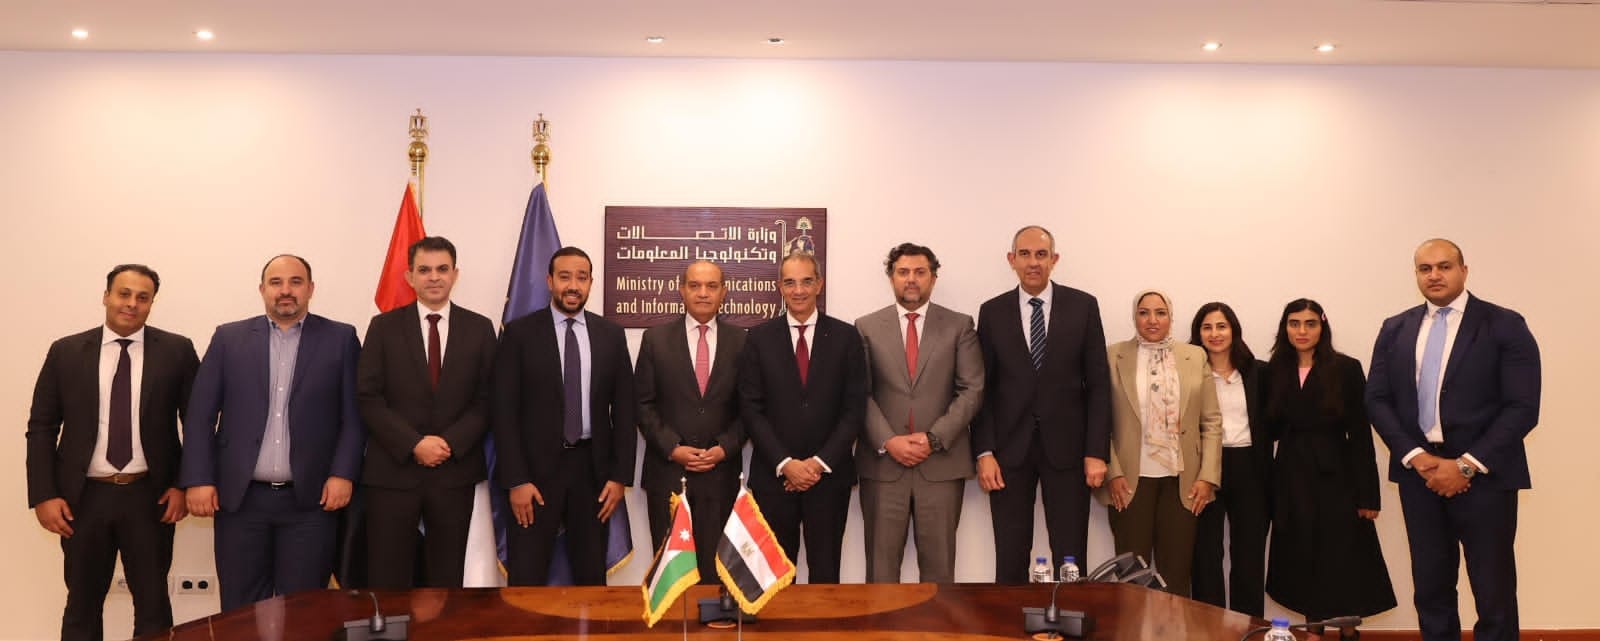 تعاون مصري أردني لإنشاء الكابل البحري الجديد "كورال بريدج" 3